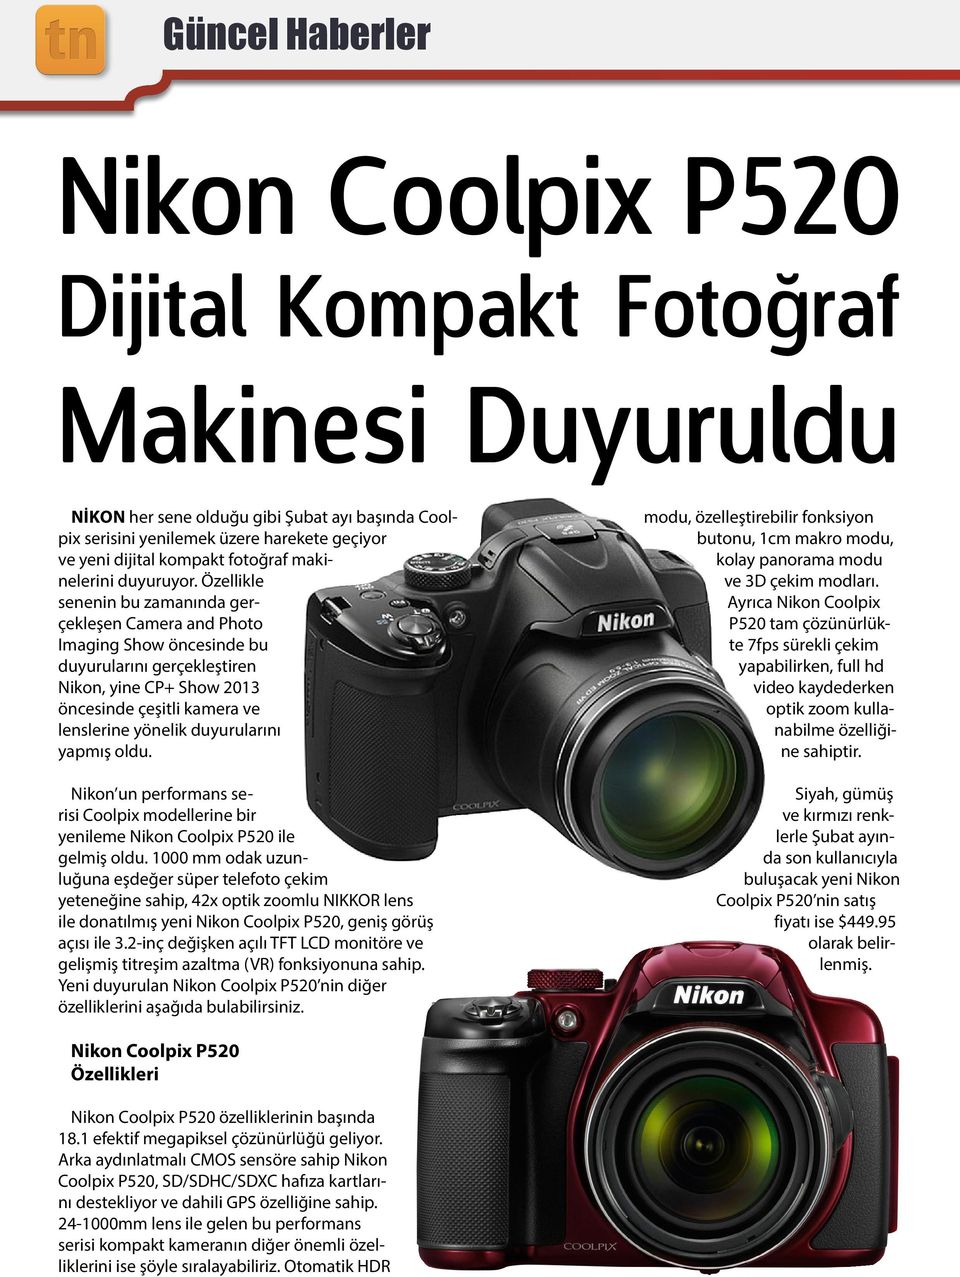 Özellikle senenin bu zamanında gerçekleşen Camera and Photo Imaging Show öncesinde bu duyurularını gerçekleştiren Nikon, yine CP+ Show 2013 öncesinde çeşitli kamera ve lenslerine yönelik duyurularını